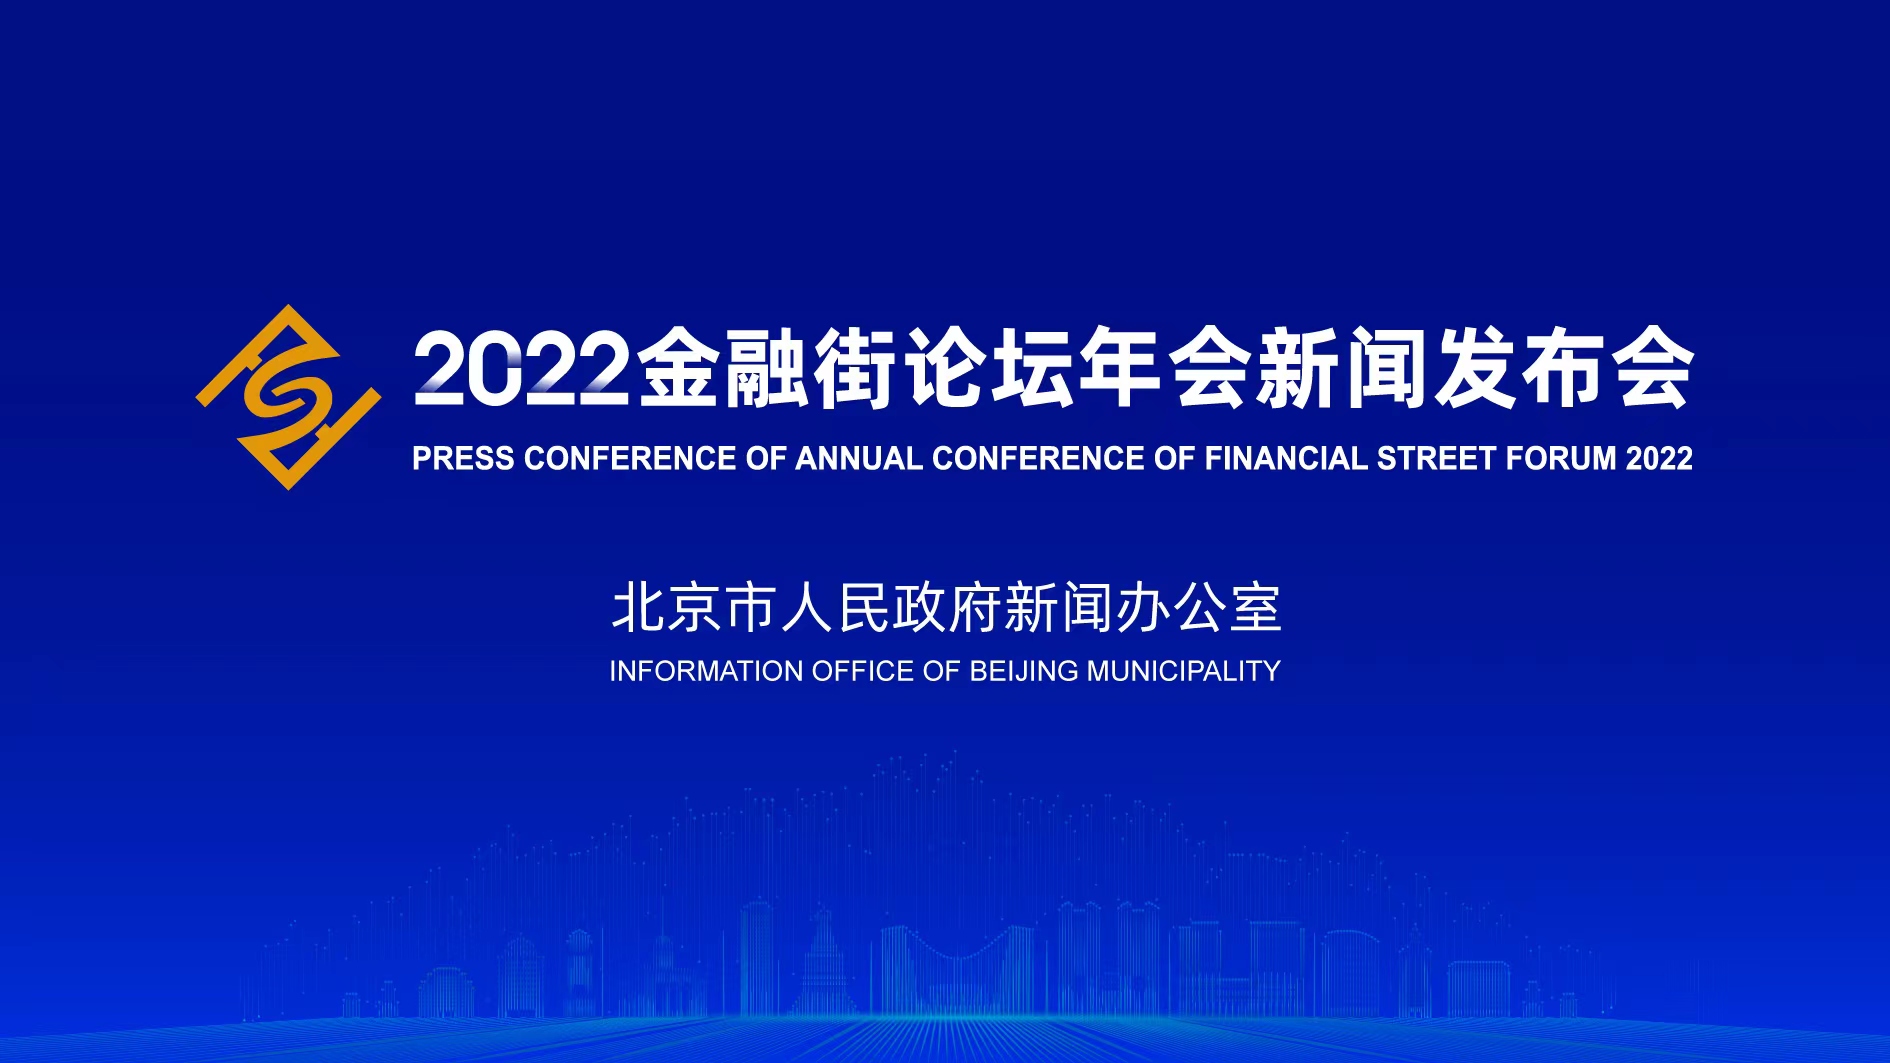 2022金融街论坛年会新闻发布会